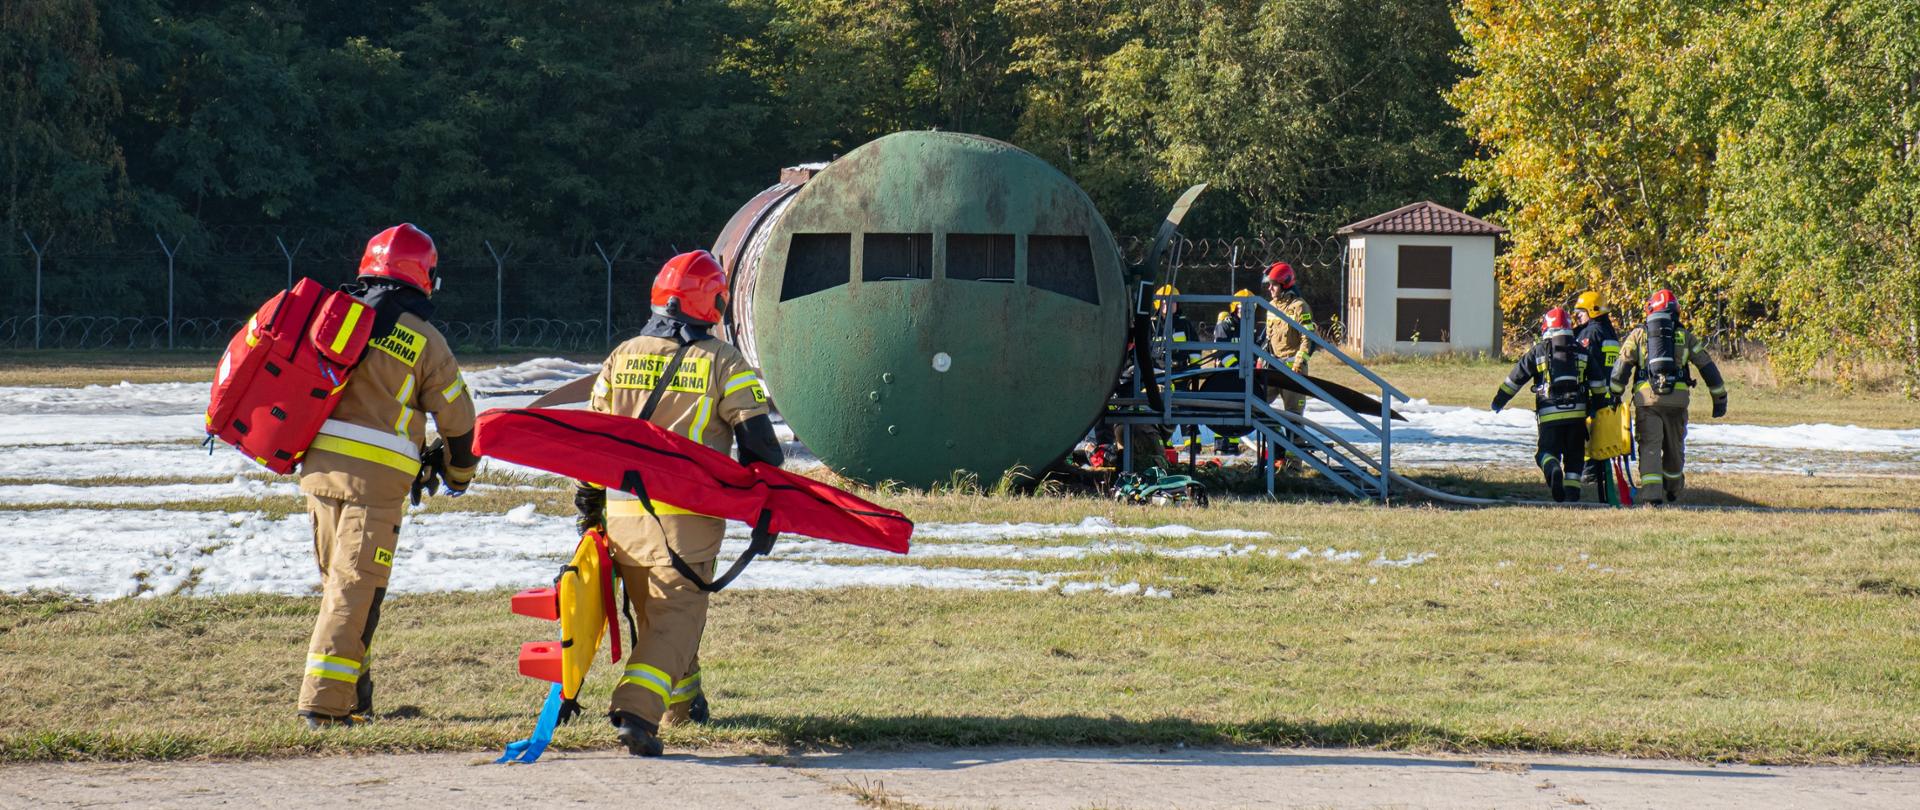 Strażacy z torbą medyczna i noszami idą w kierunku wraku samolotu (symulator wypadku lotniczego)